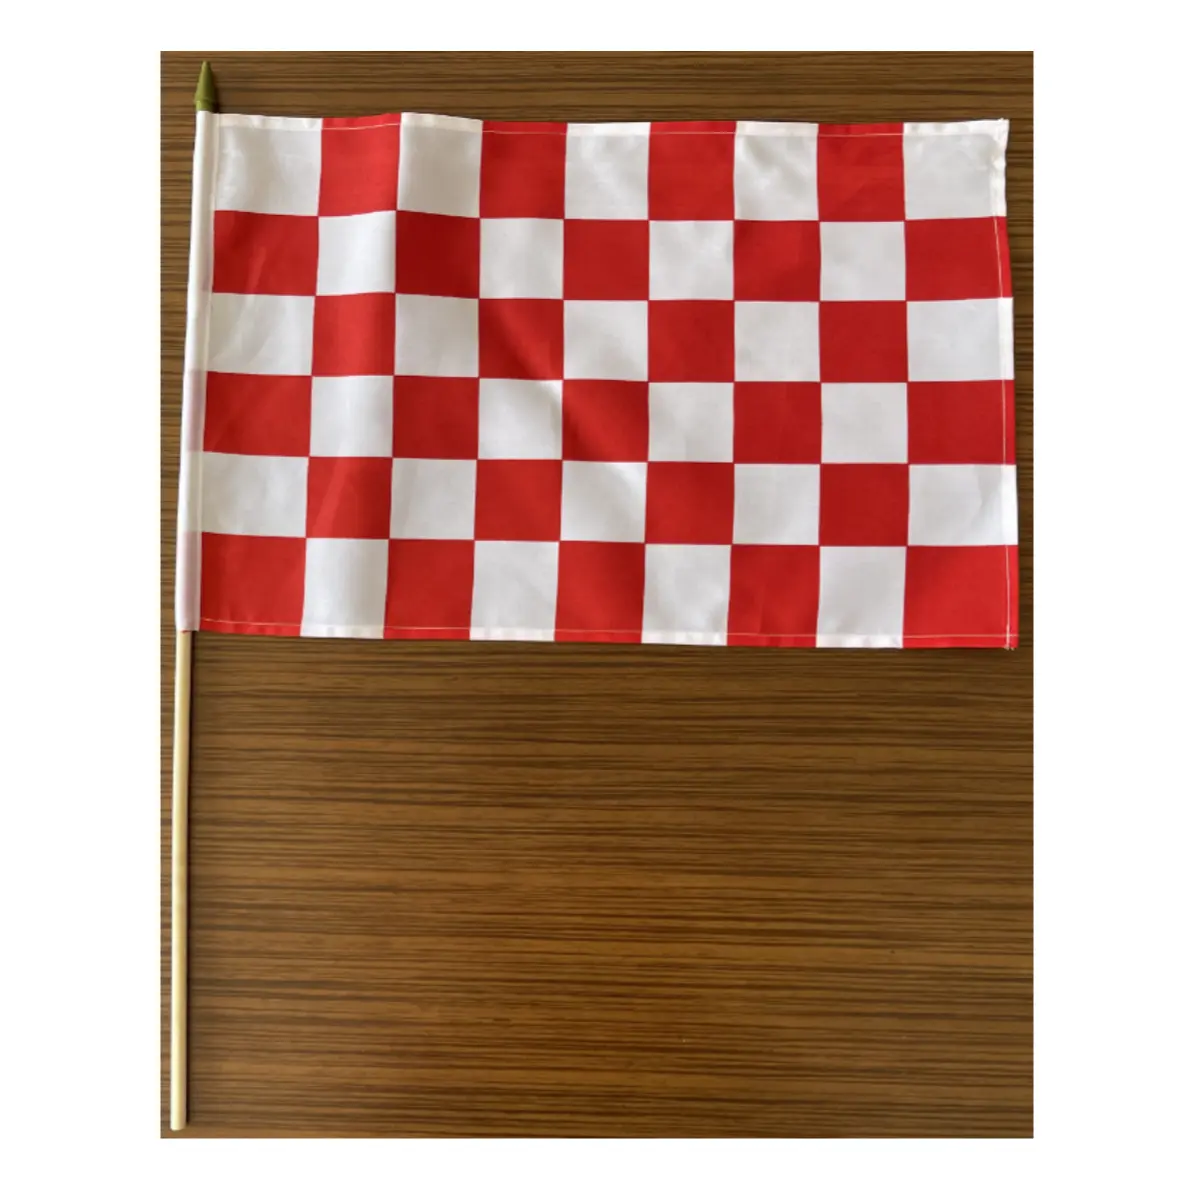 Bestseller Red und White Hand Racing Flag Hand fliegende Strand Banner Stand Teardrop rot weiß blau